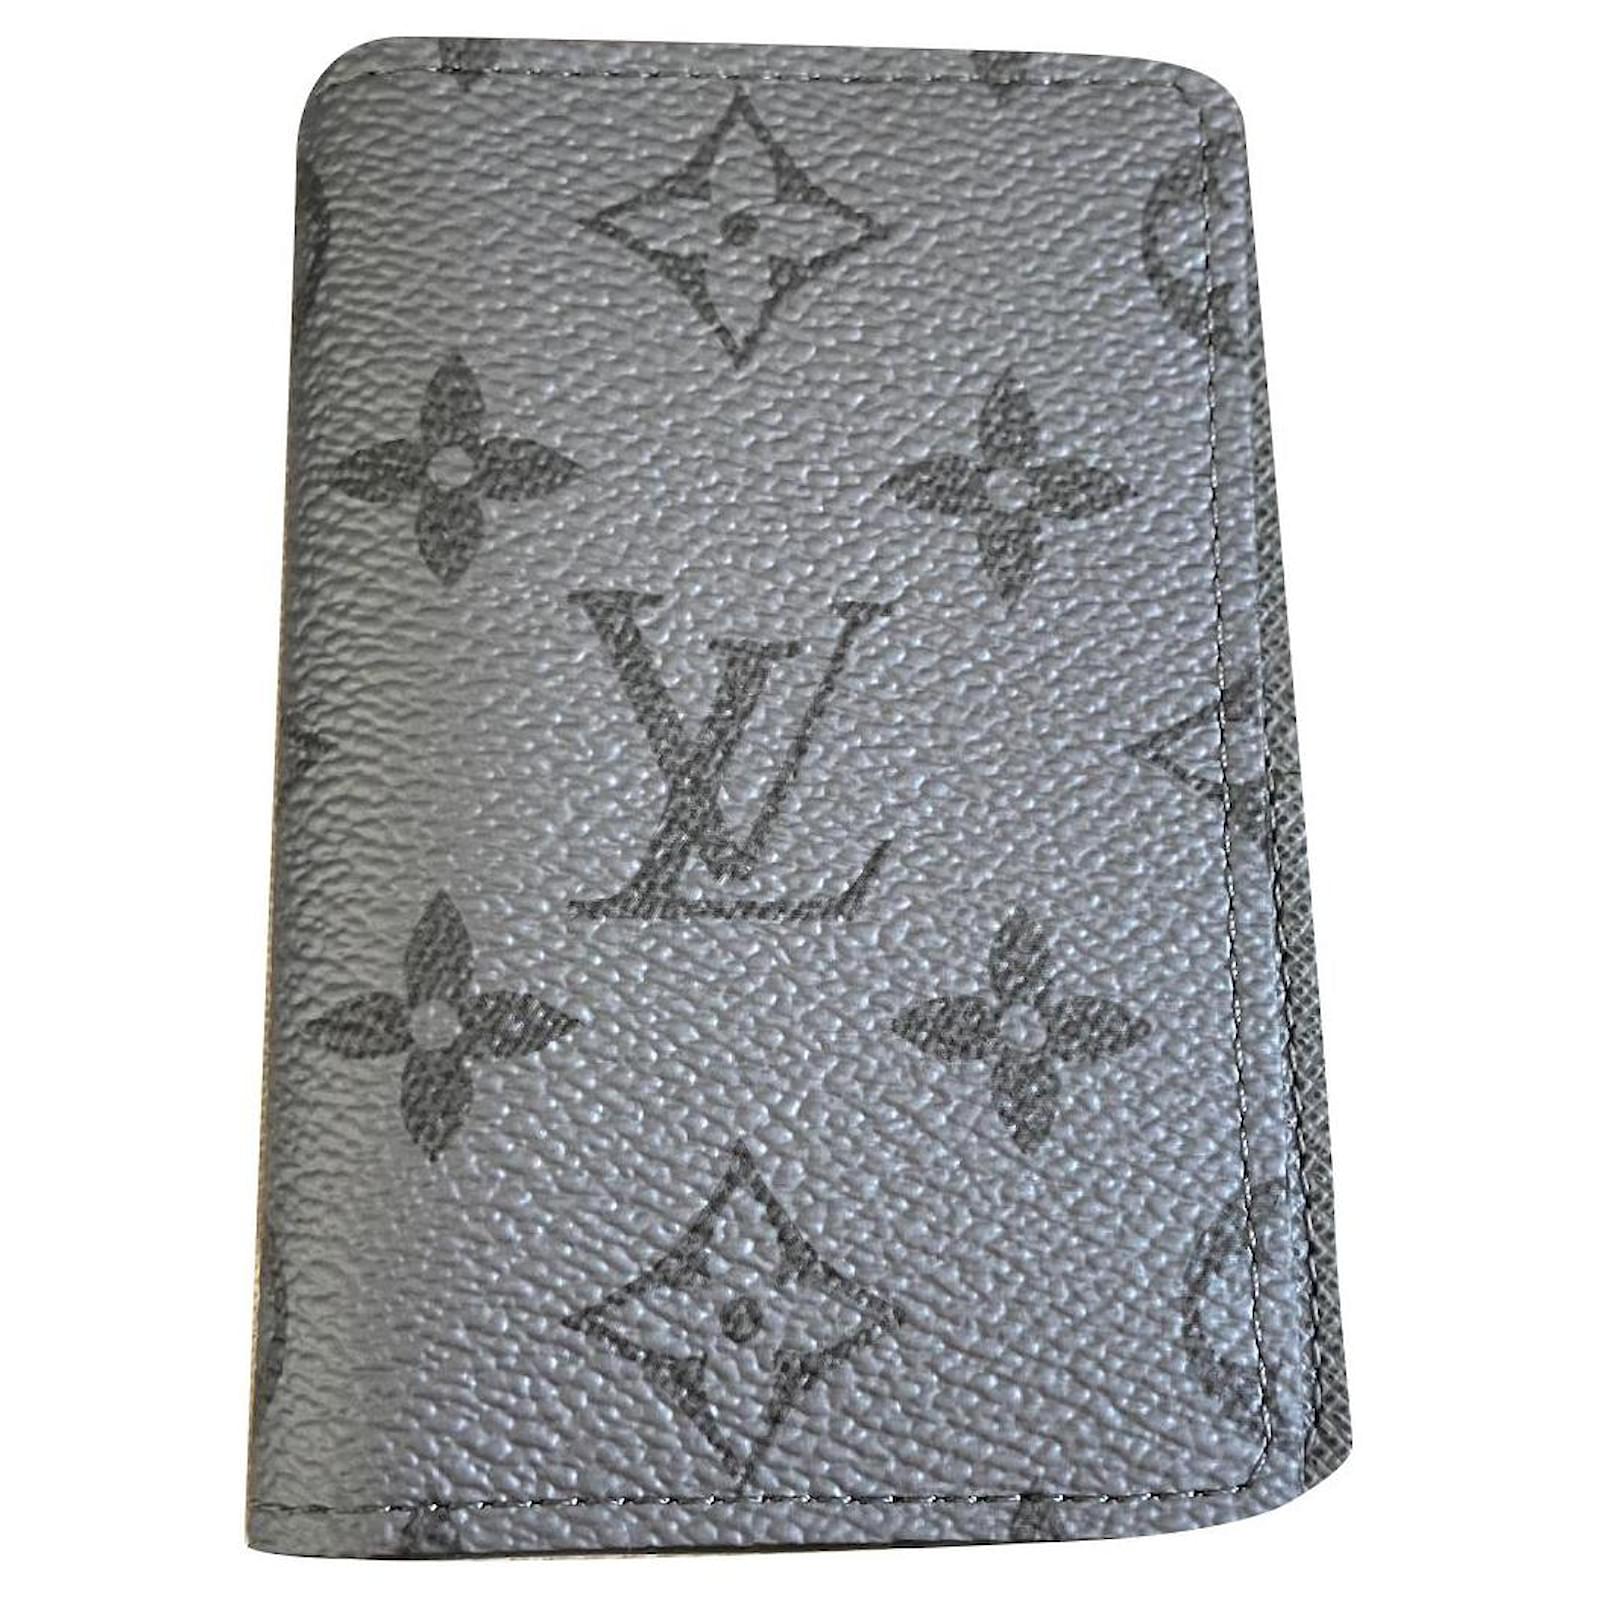 Louis Vuitton Wristlets